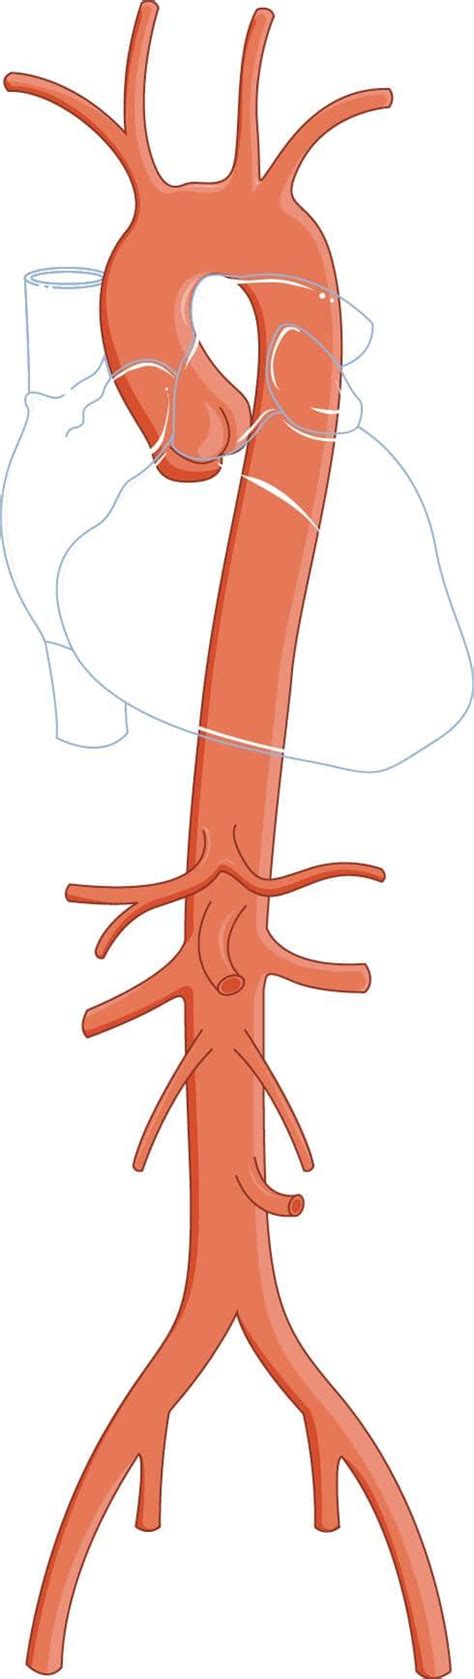 Arteria Aorta Partes Ubicación Anatomia Función Importancia Clínica